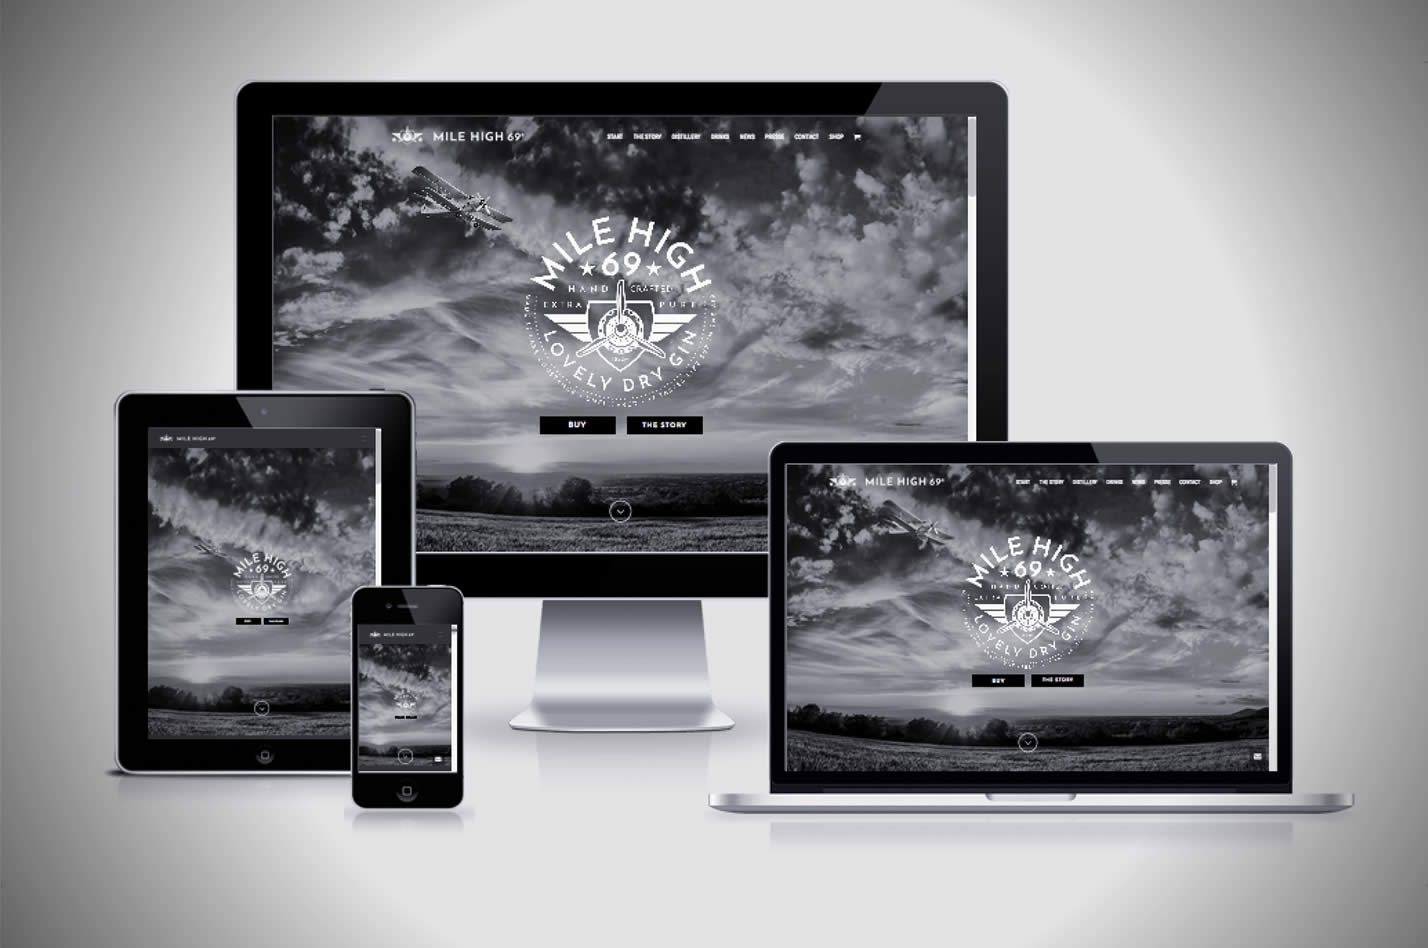 Mile High 69 Gin Webdesign von Christin von Wels, catfish creative mit Bildschirm, Tablet und Smartphone